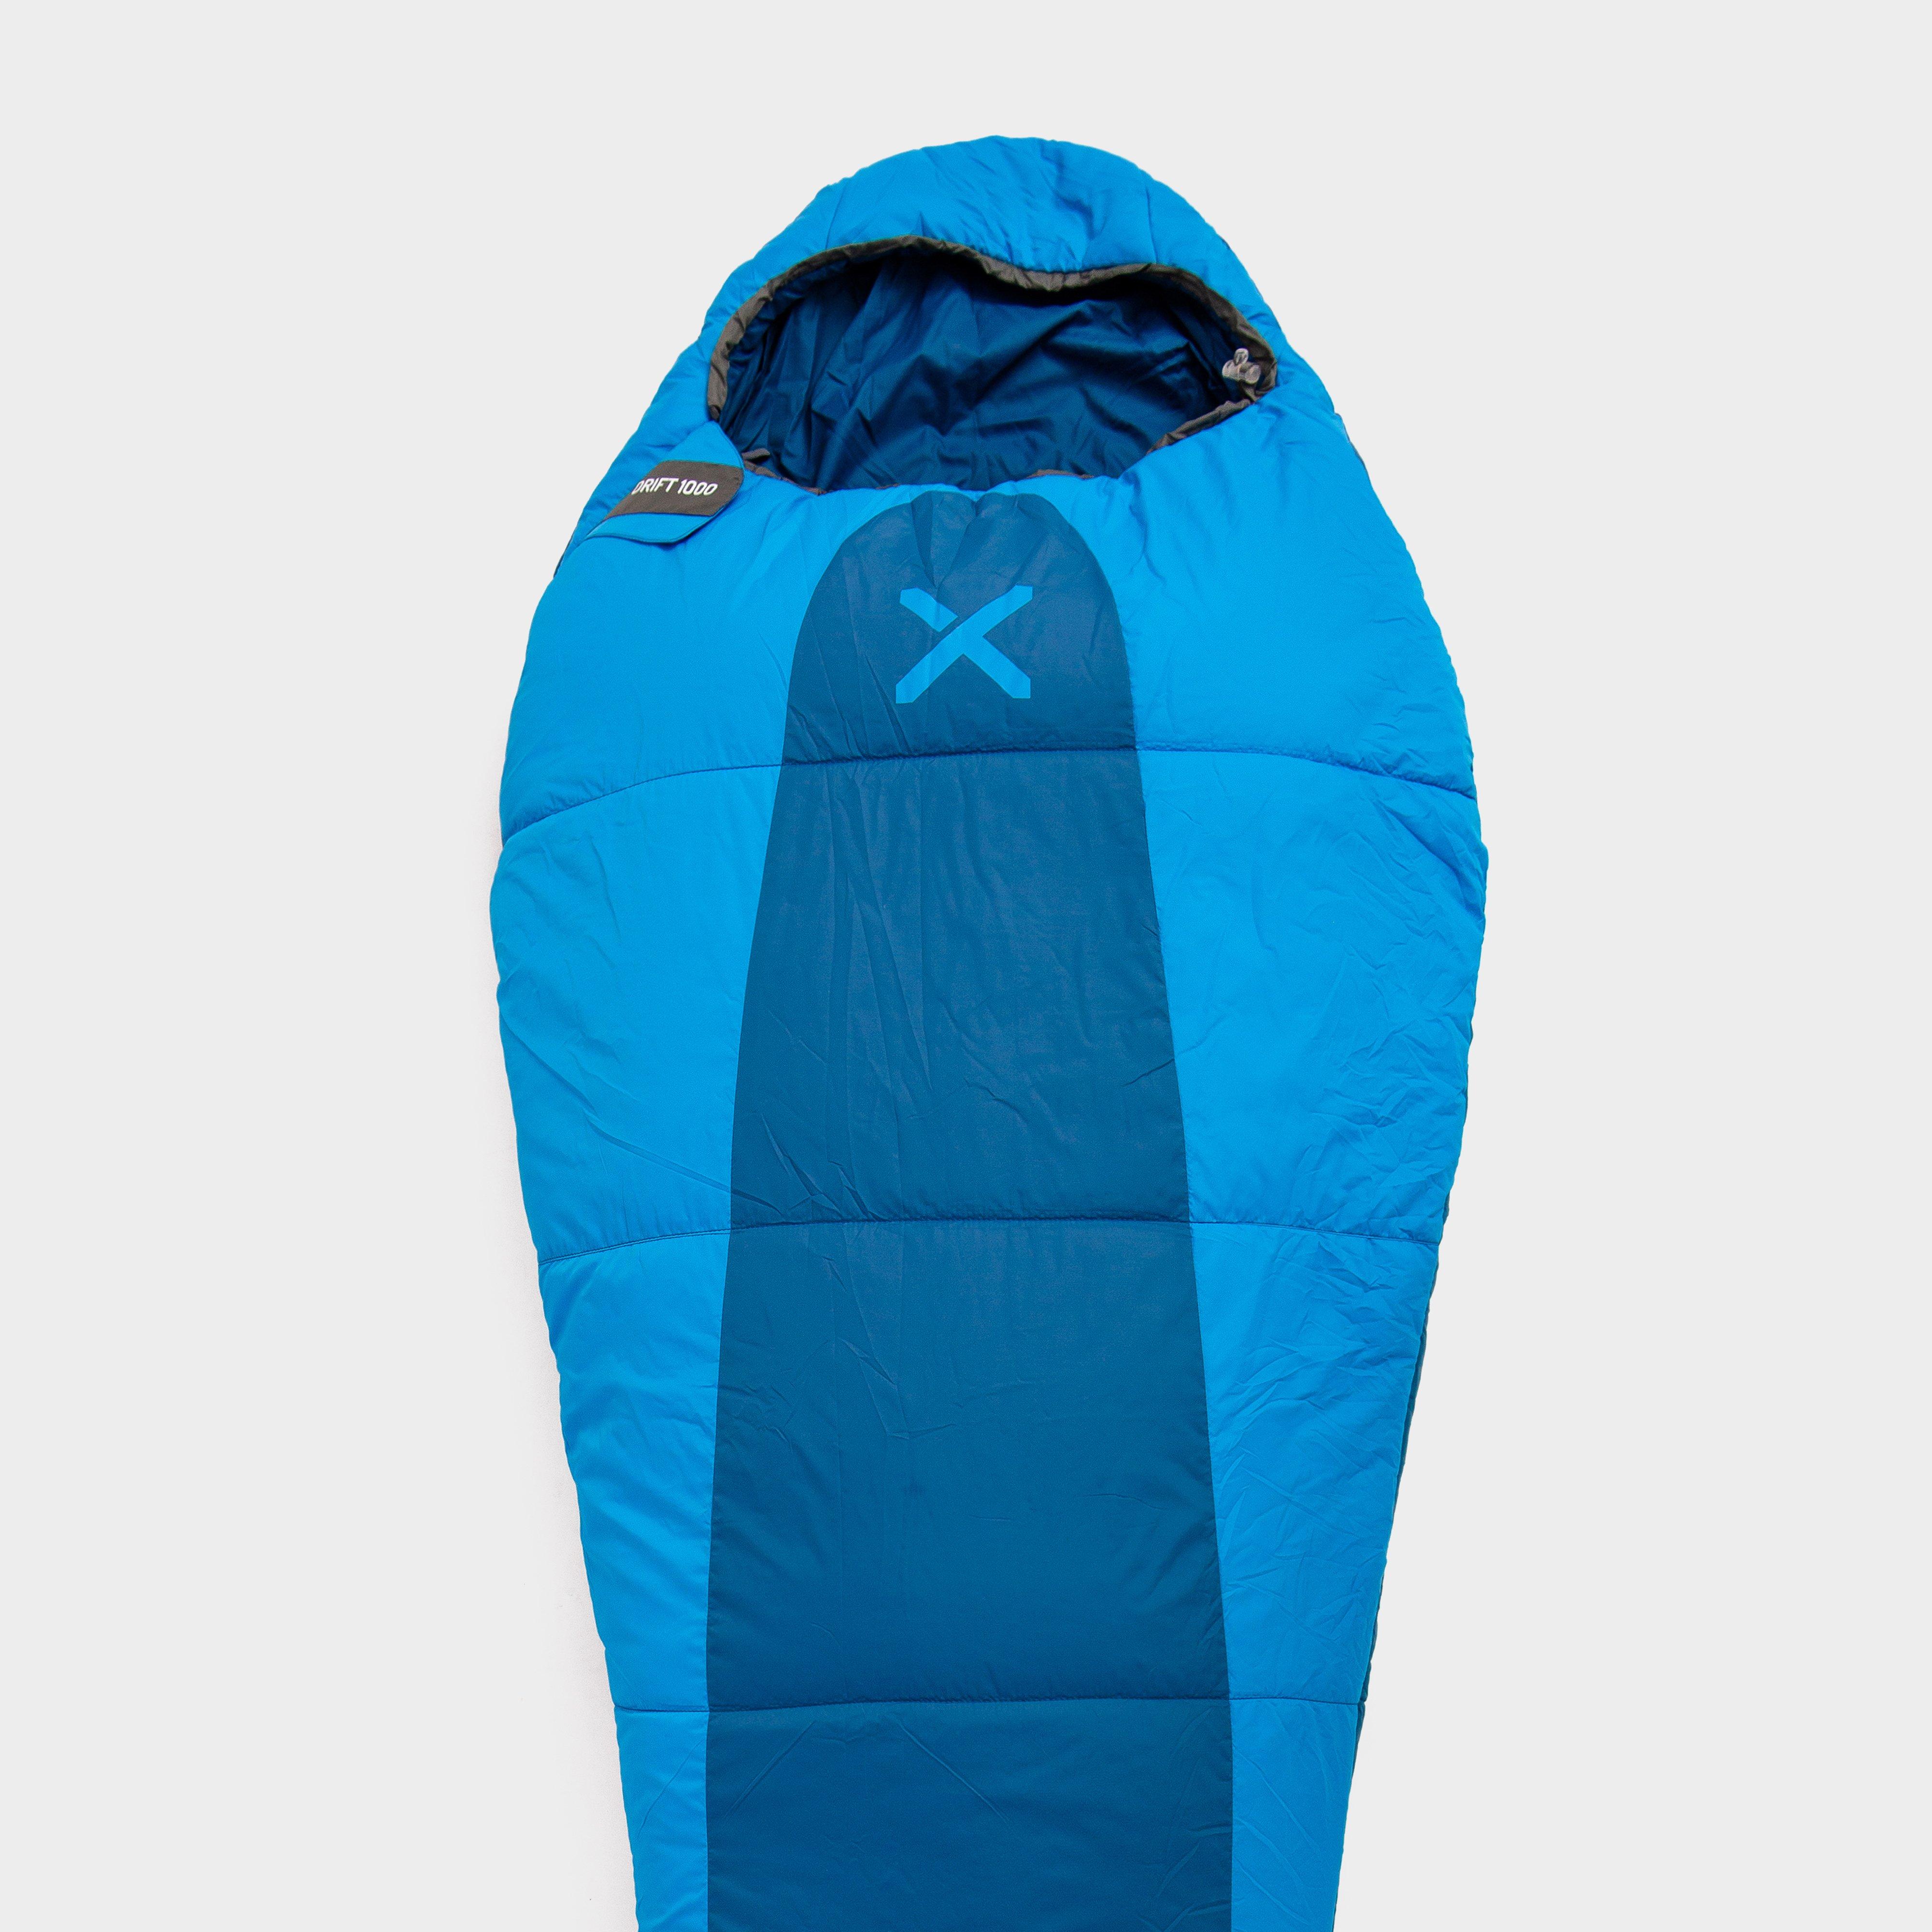 OEX Oex Drift 1000 Sleeping Bag - Blue, Blue